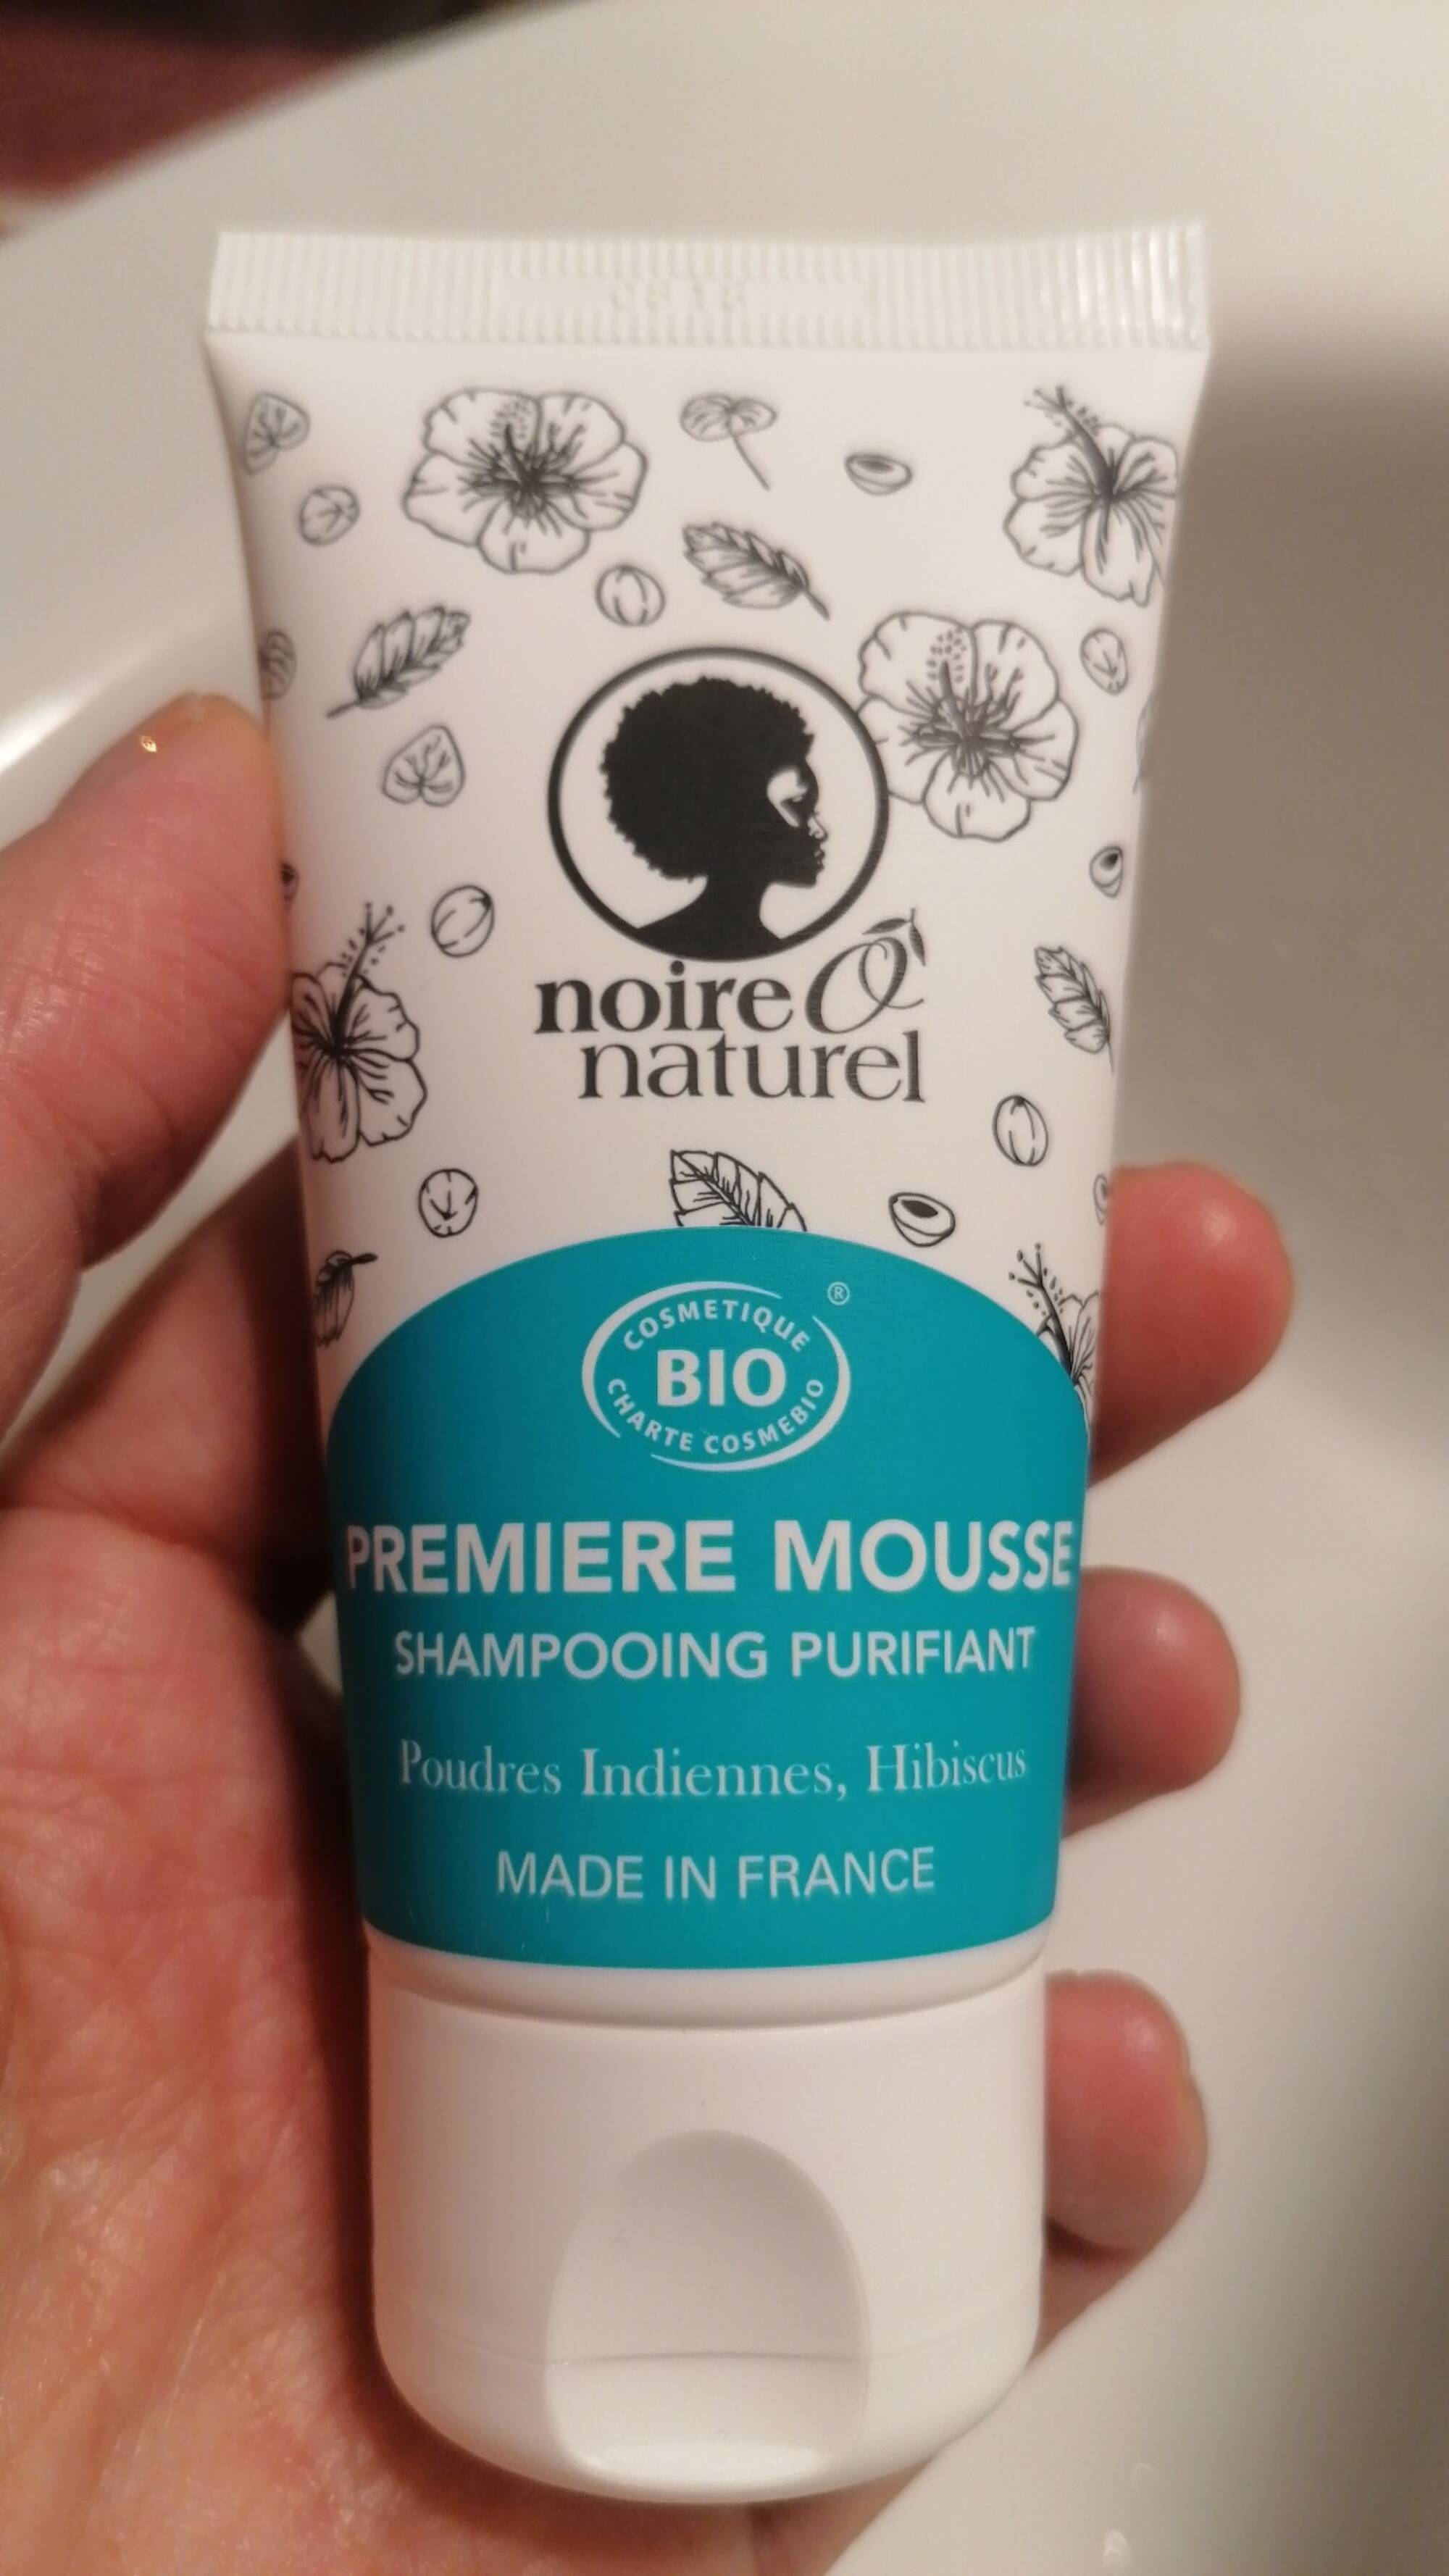 NOIRE Ô NATUREL - Premiere mousse - Shampooing purifiant 